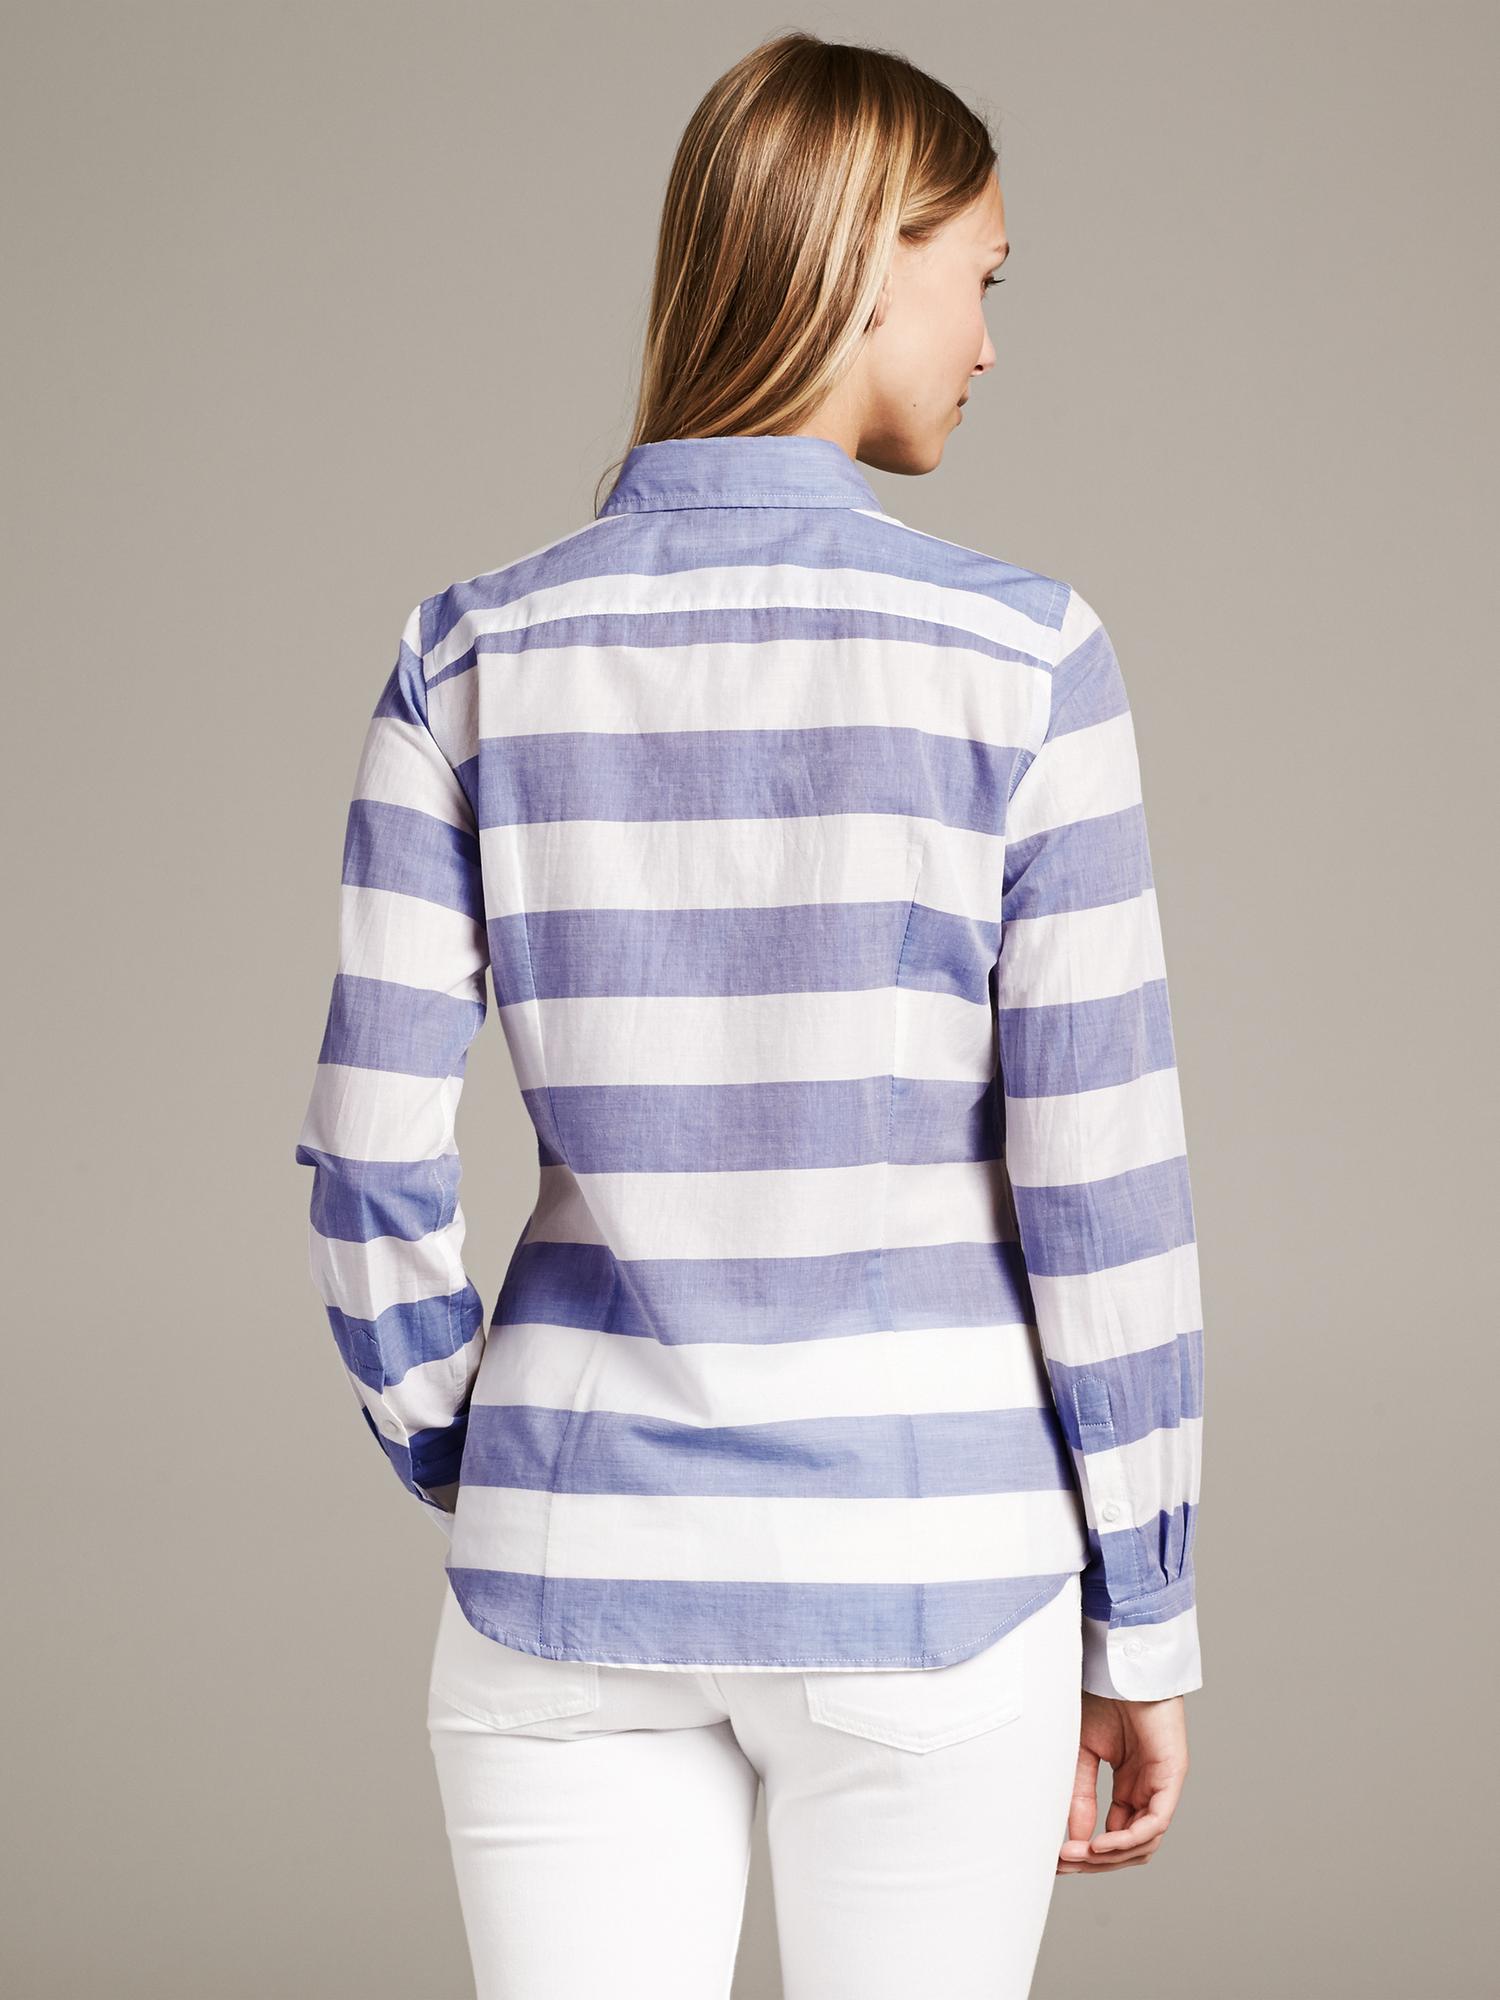 Soft-Wash Horizontal Stripe Shirt